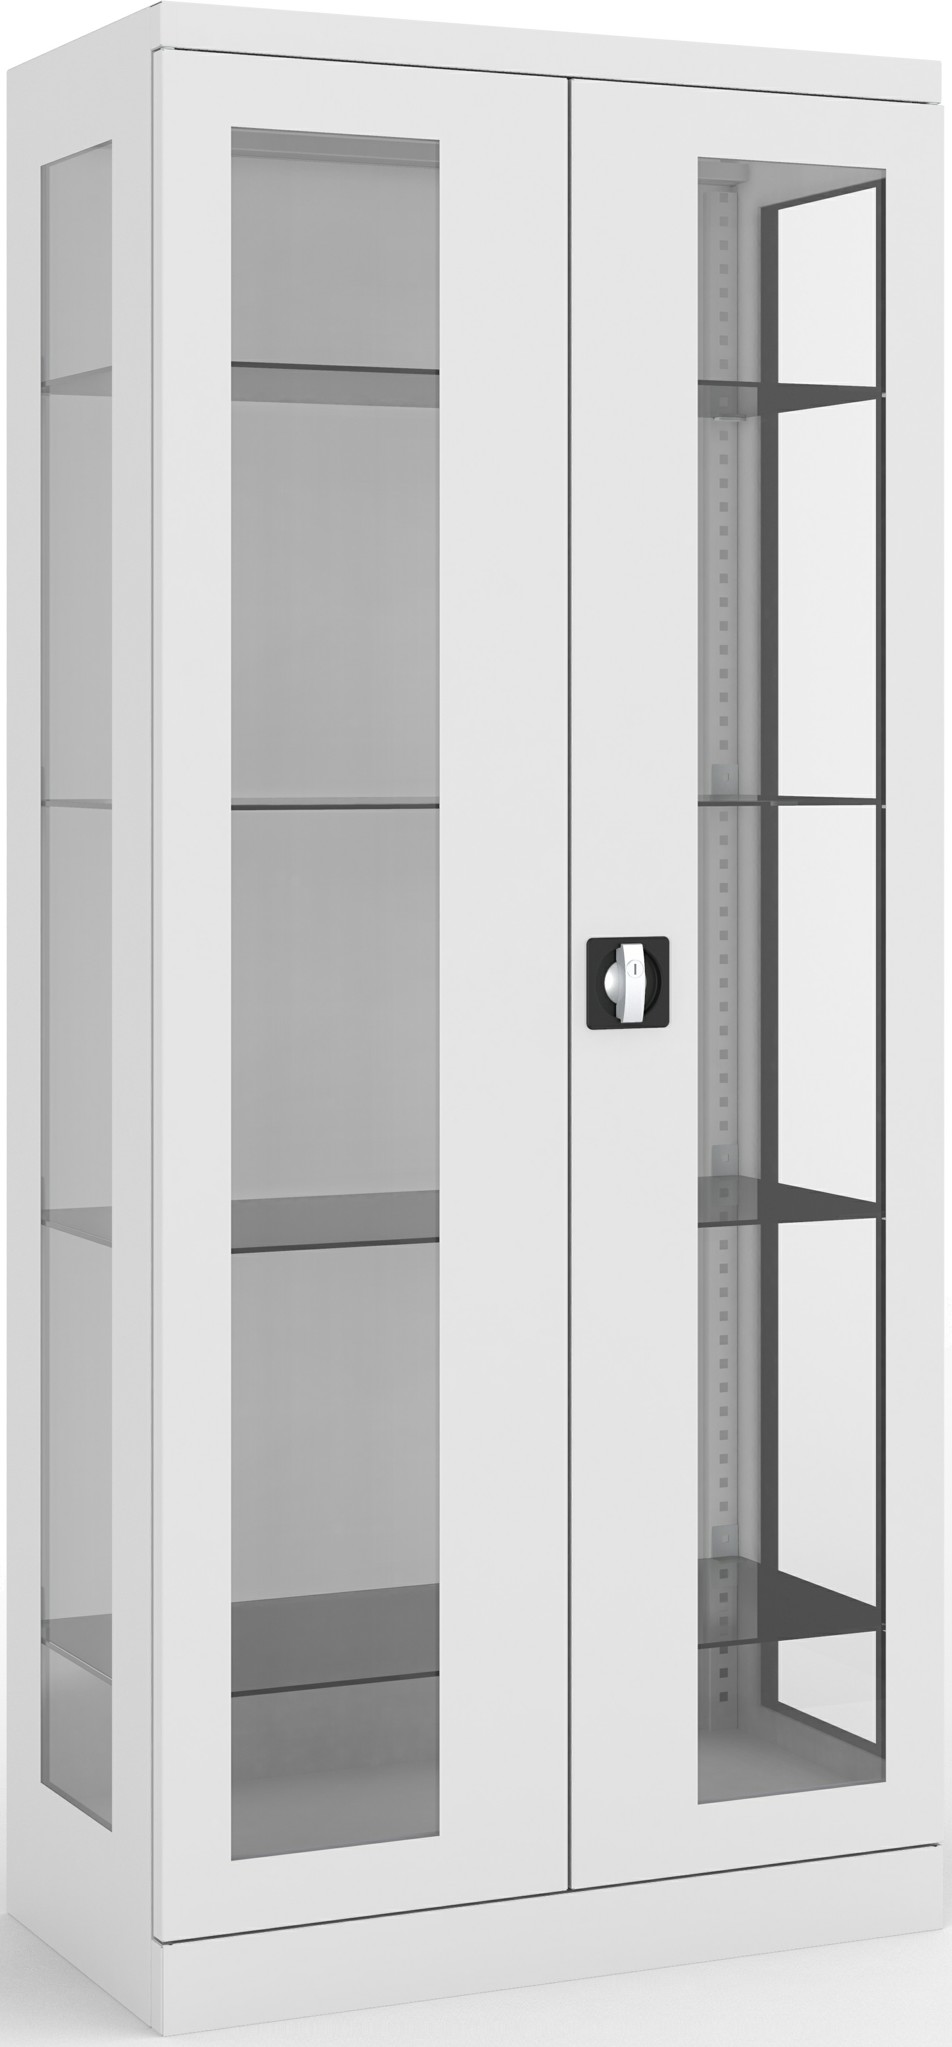 Bild von Mehrzweckschrank 1800x800x435 mm HxBxT, NSML 115, Türen und Seiten mit Sichtfenster